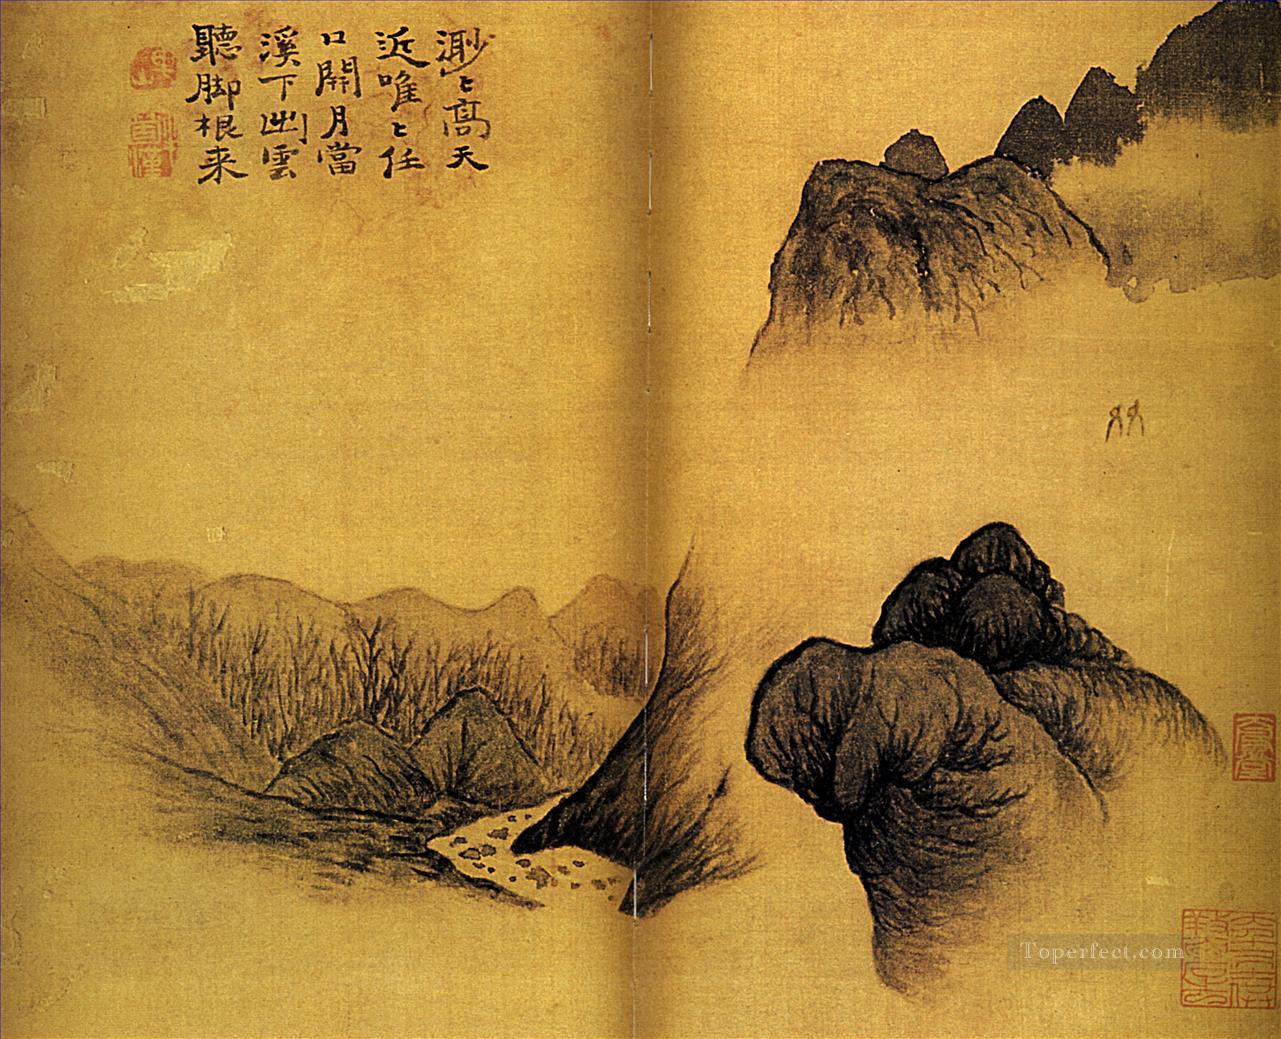 下尾月夜の二人の友人 1695 年古い中国の墨油絵